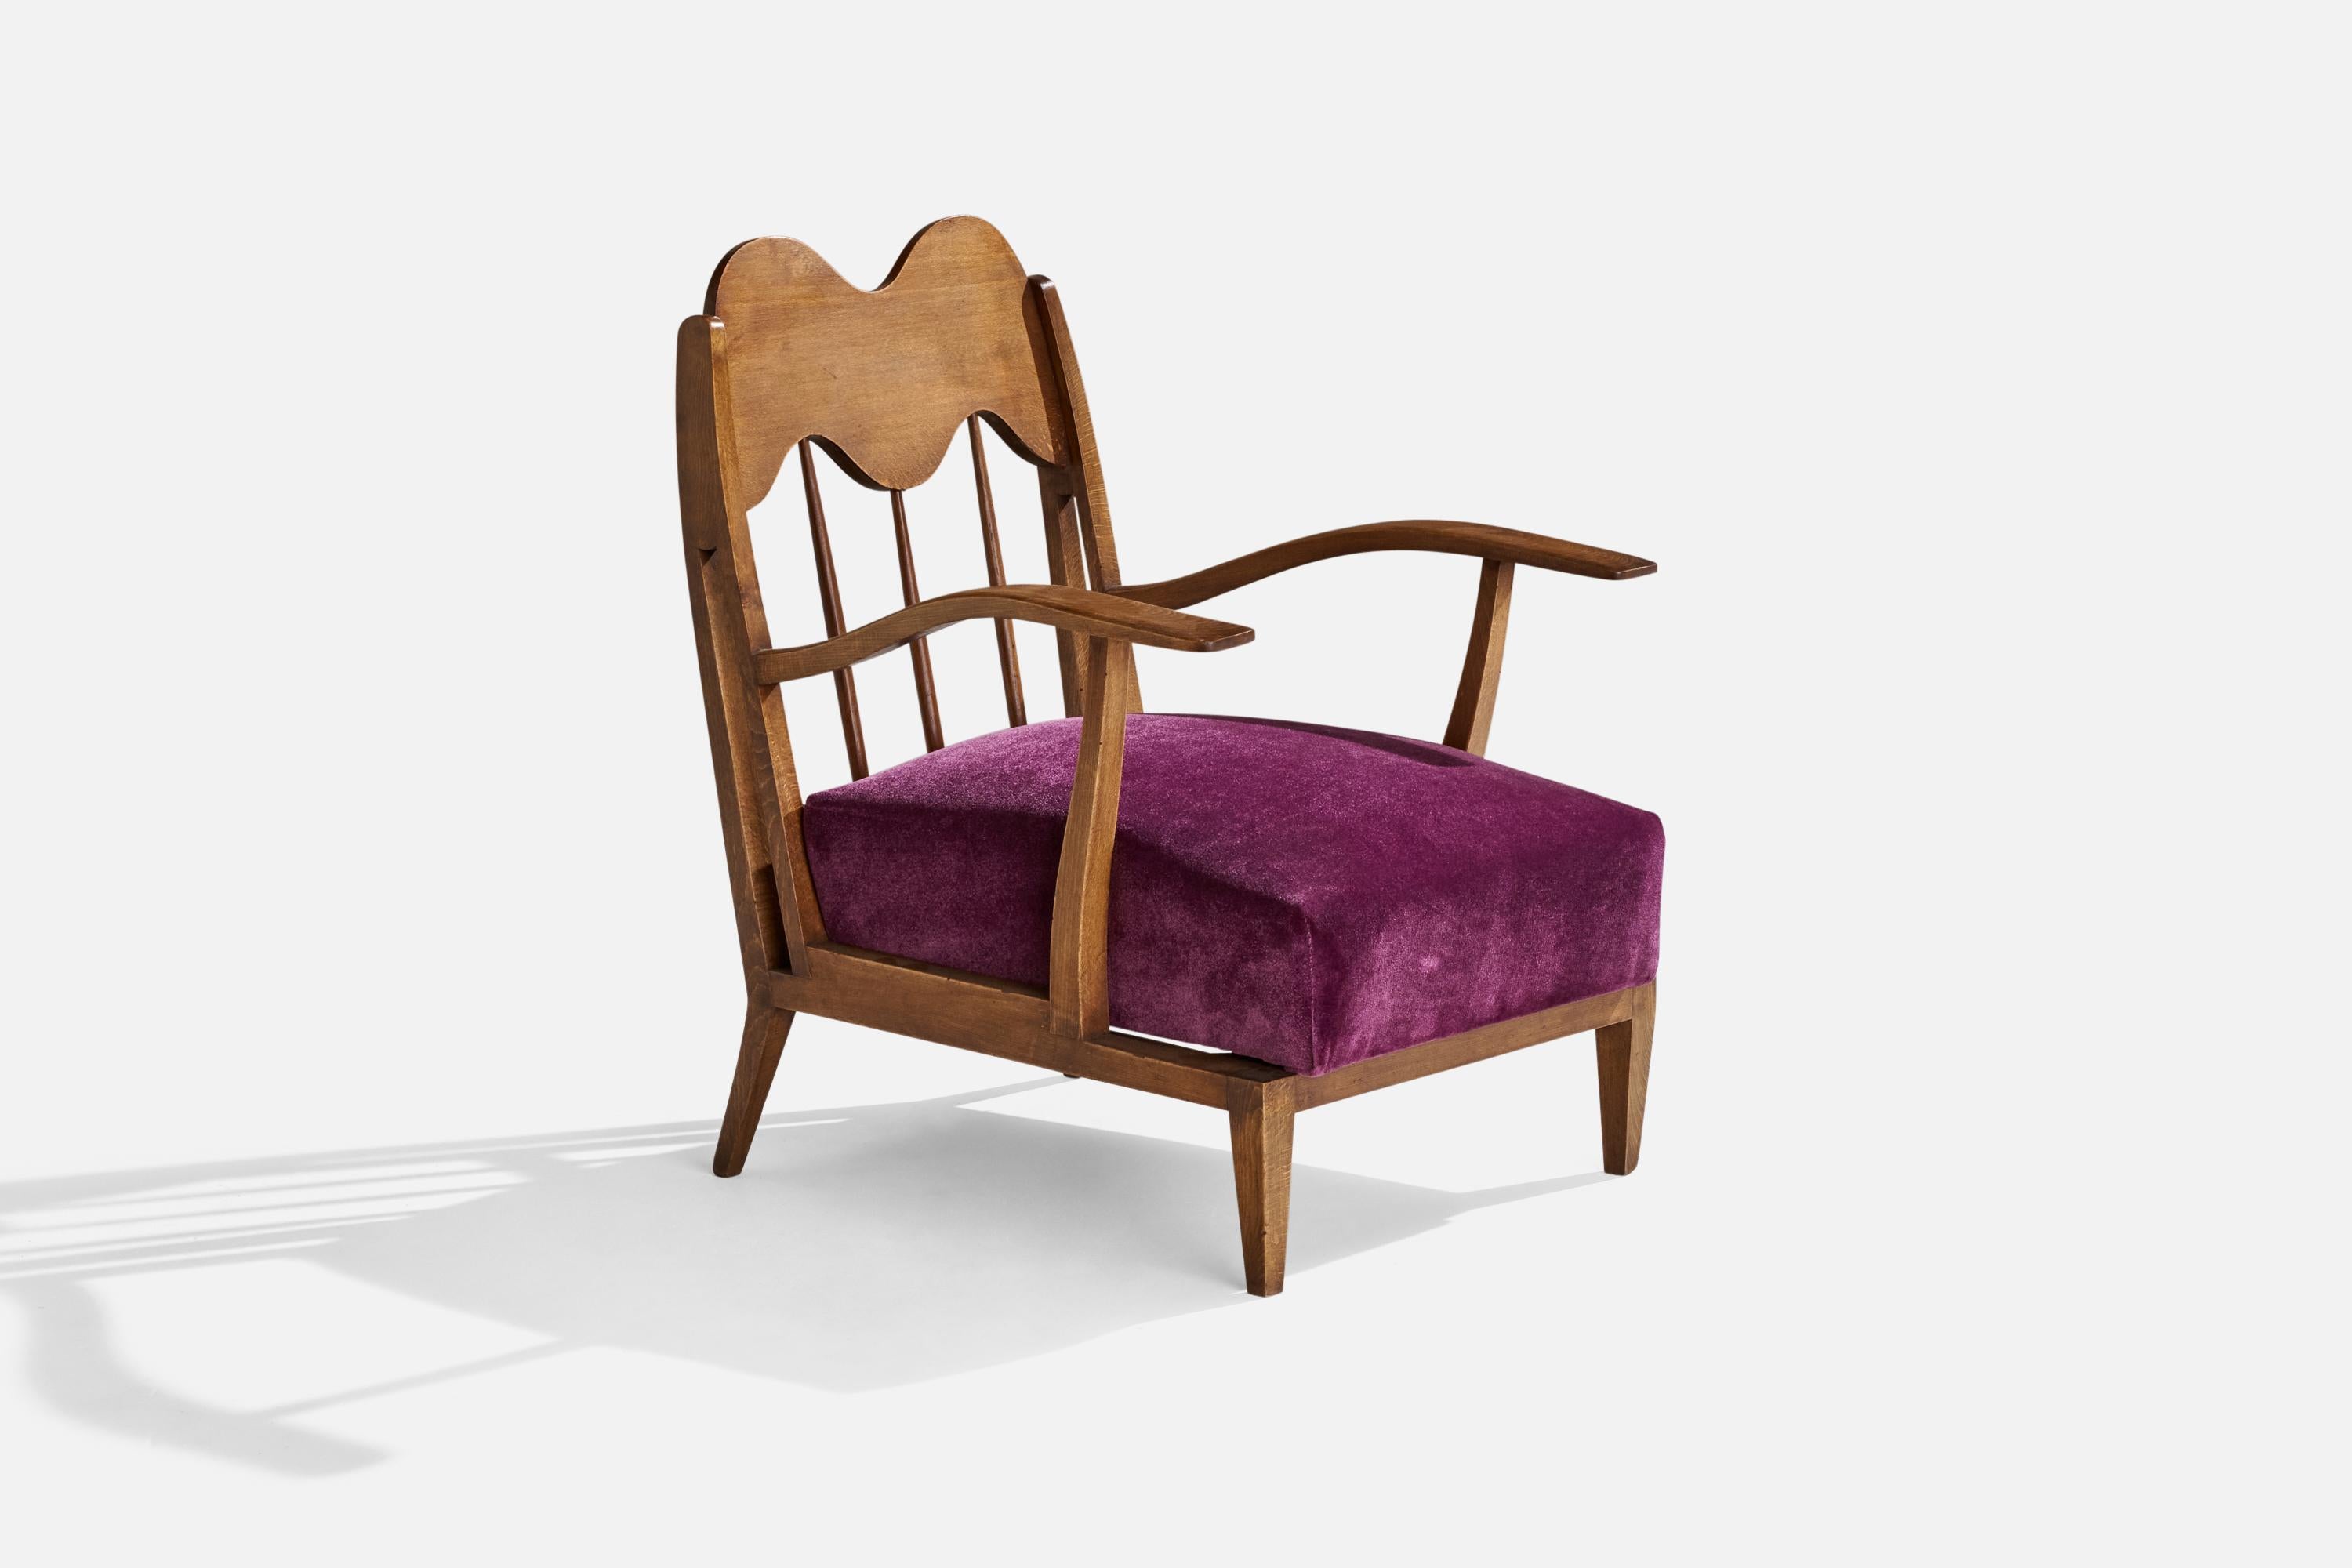 Chaise longue en noyer et velours violet, conçue et produite en Italie, c.C. 1940.

Hauteur de l'assise : 13